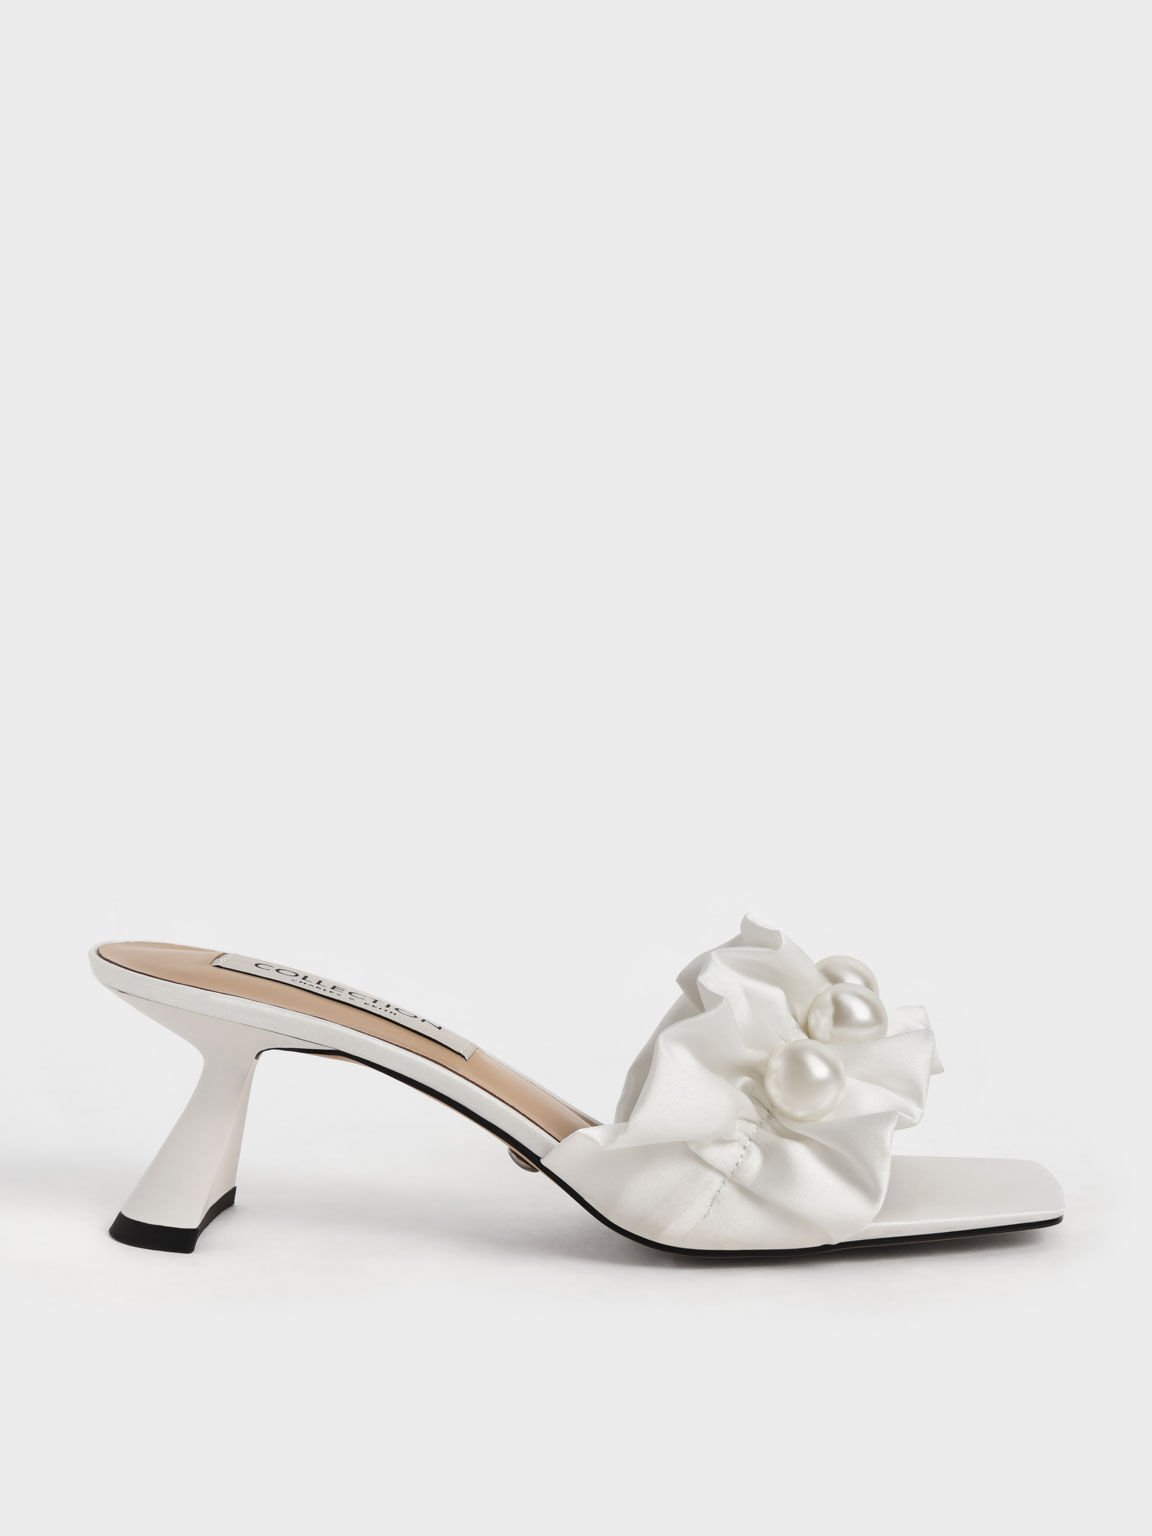 Blythe 珍珠穆勒高跟鞋, 白色, hi-res